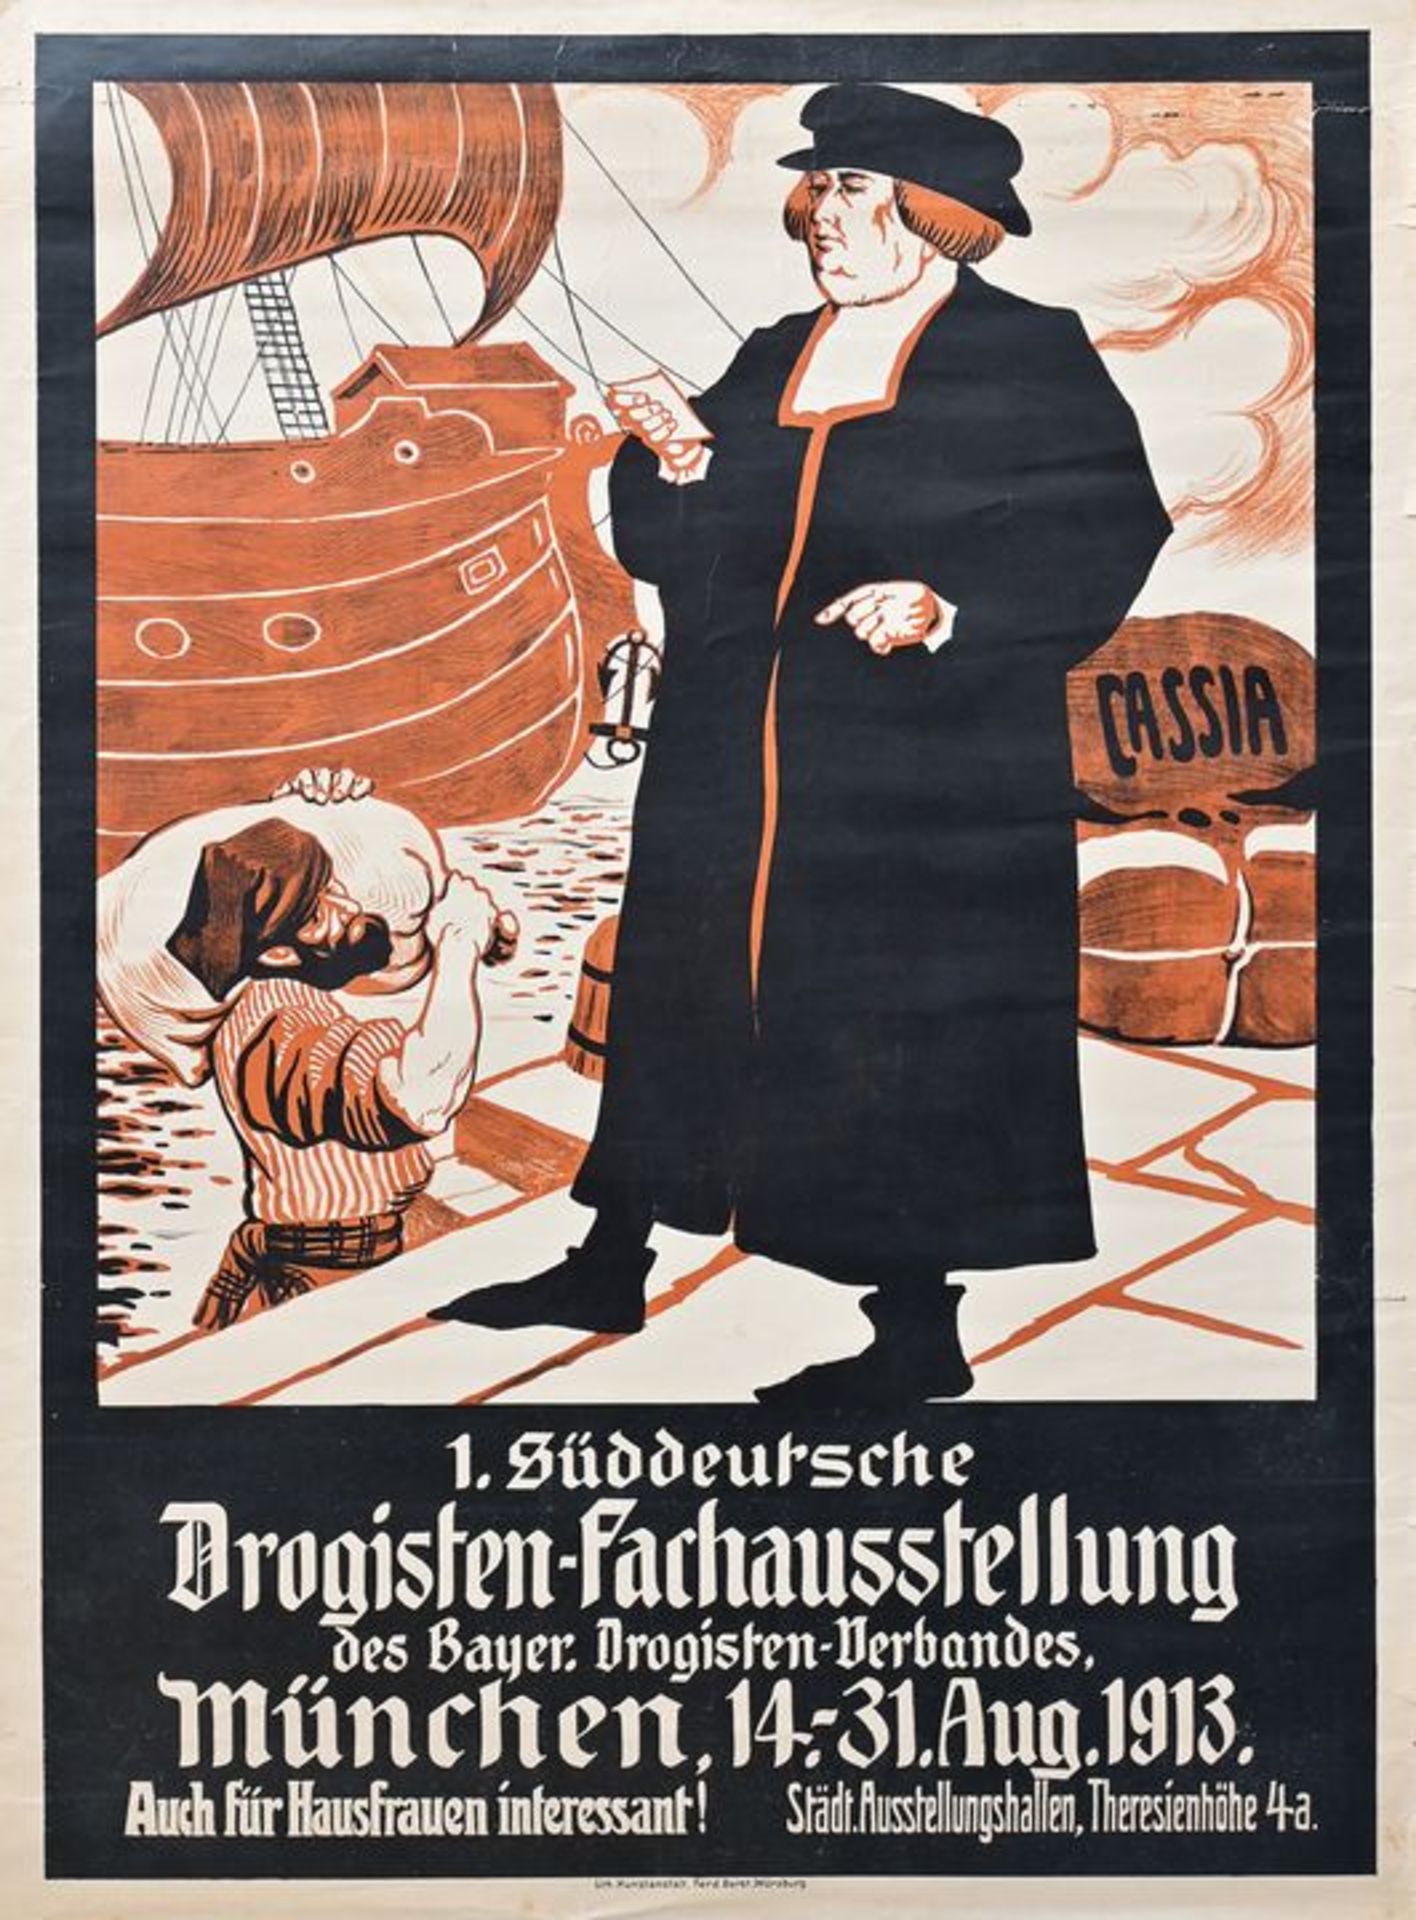 Cassia, Plakat / Cassia, Poster